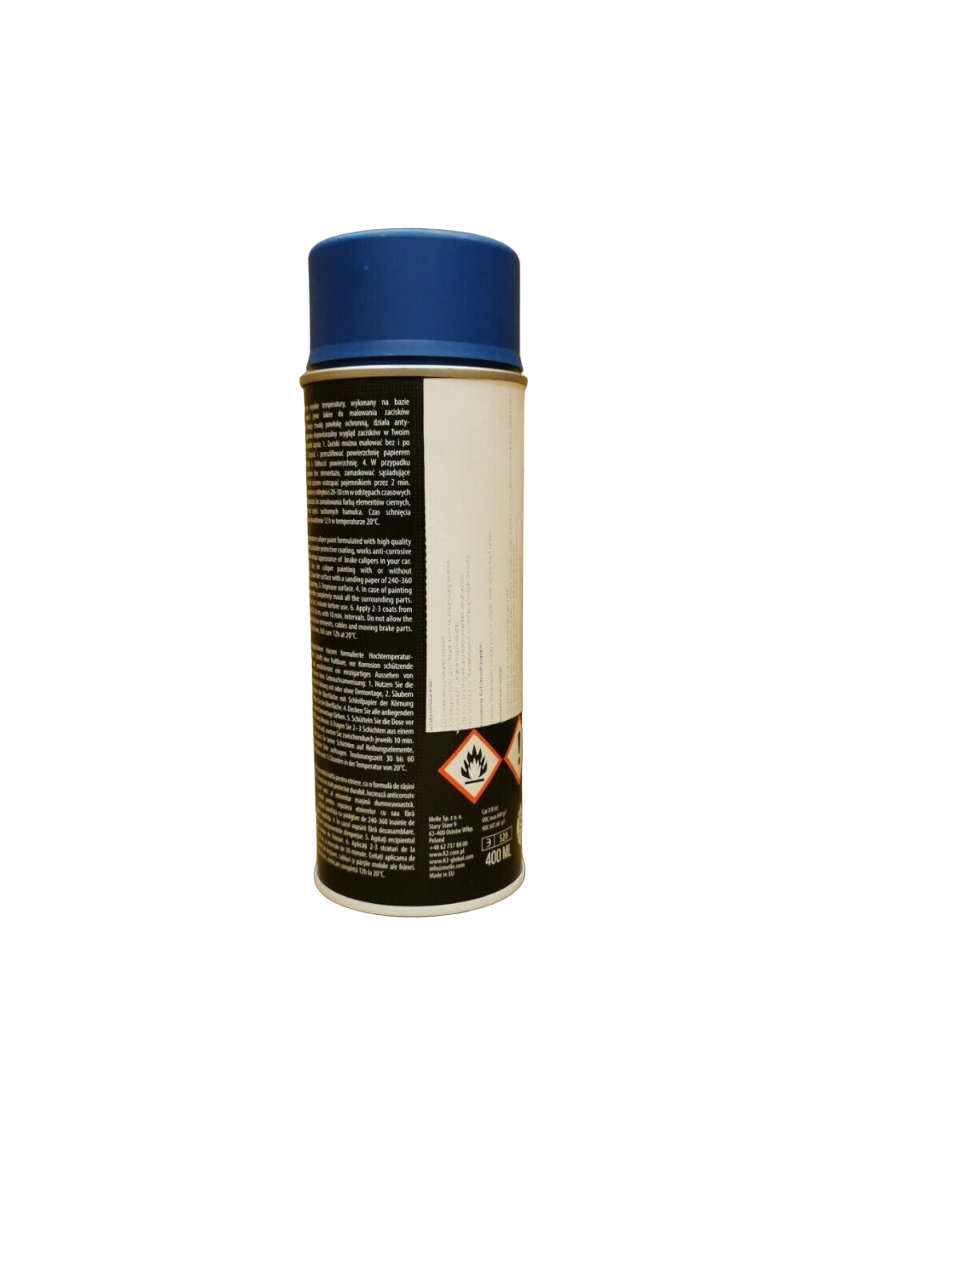 K2 Bremssattellack 0,4L Spraydose Blau glänzend Thermolack 260°C Farbe hitzefest